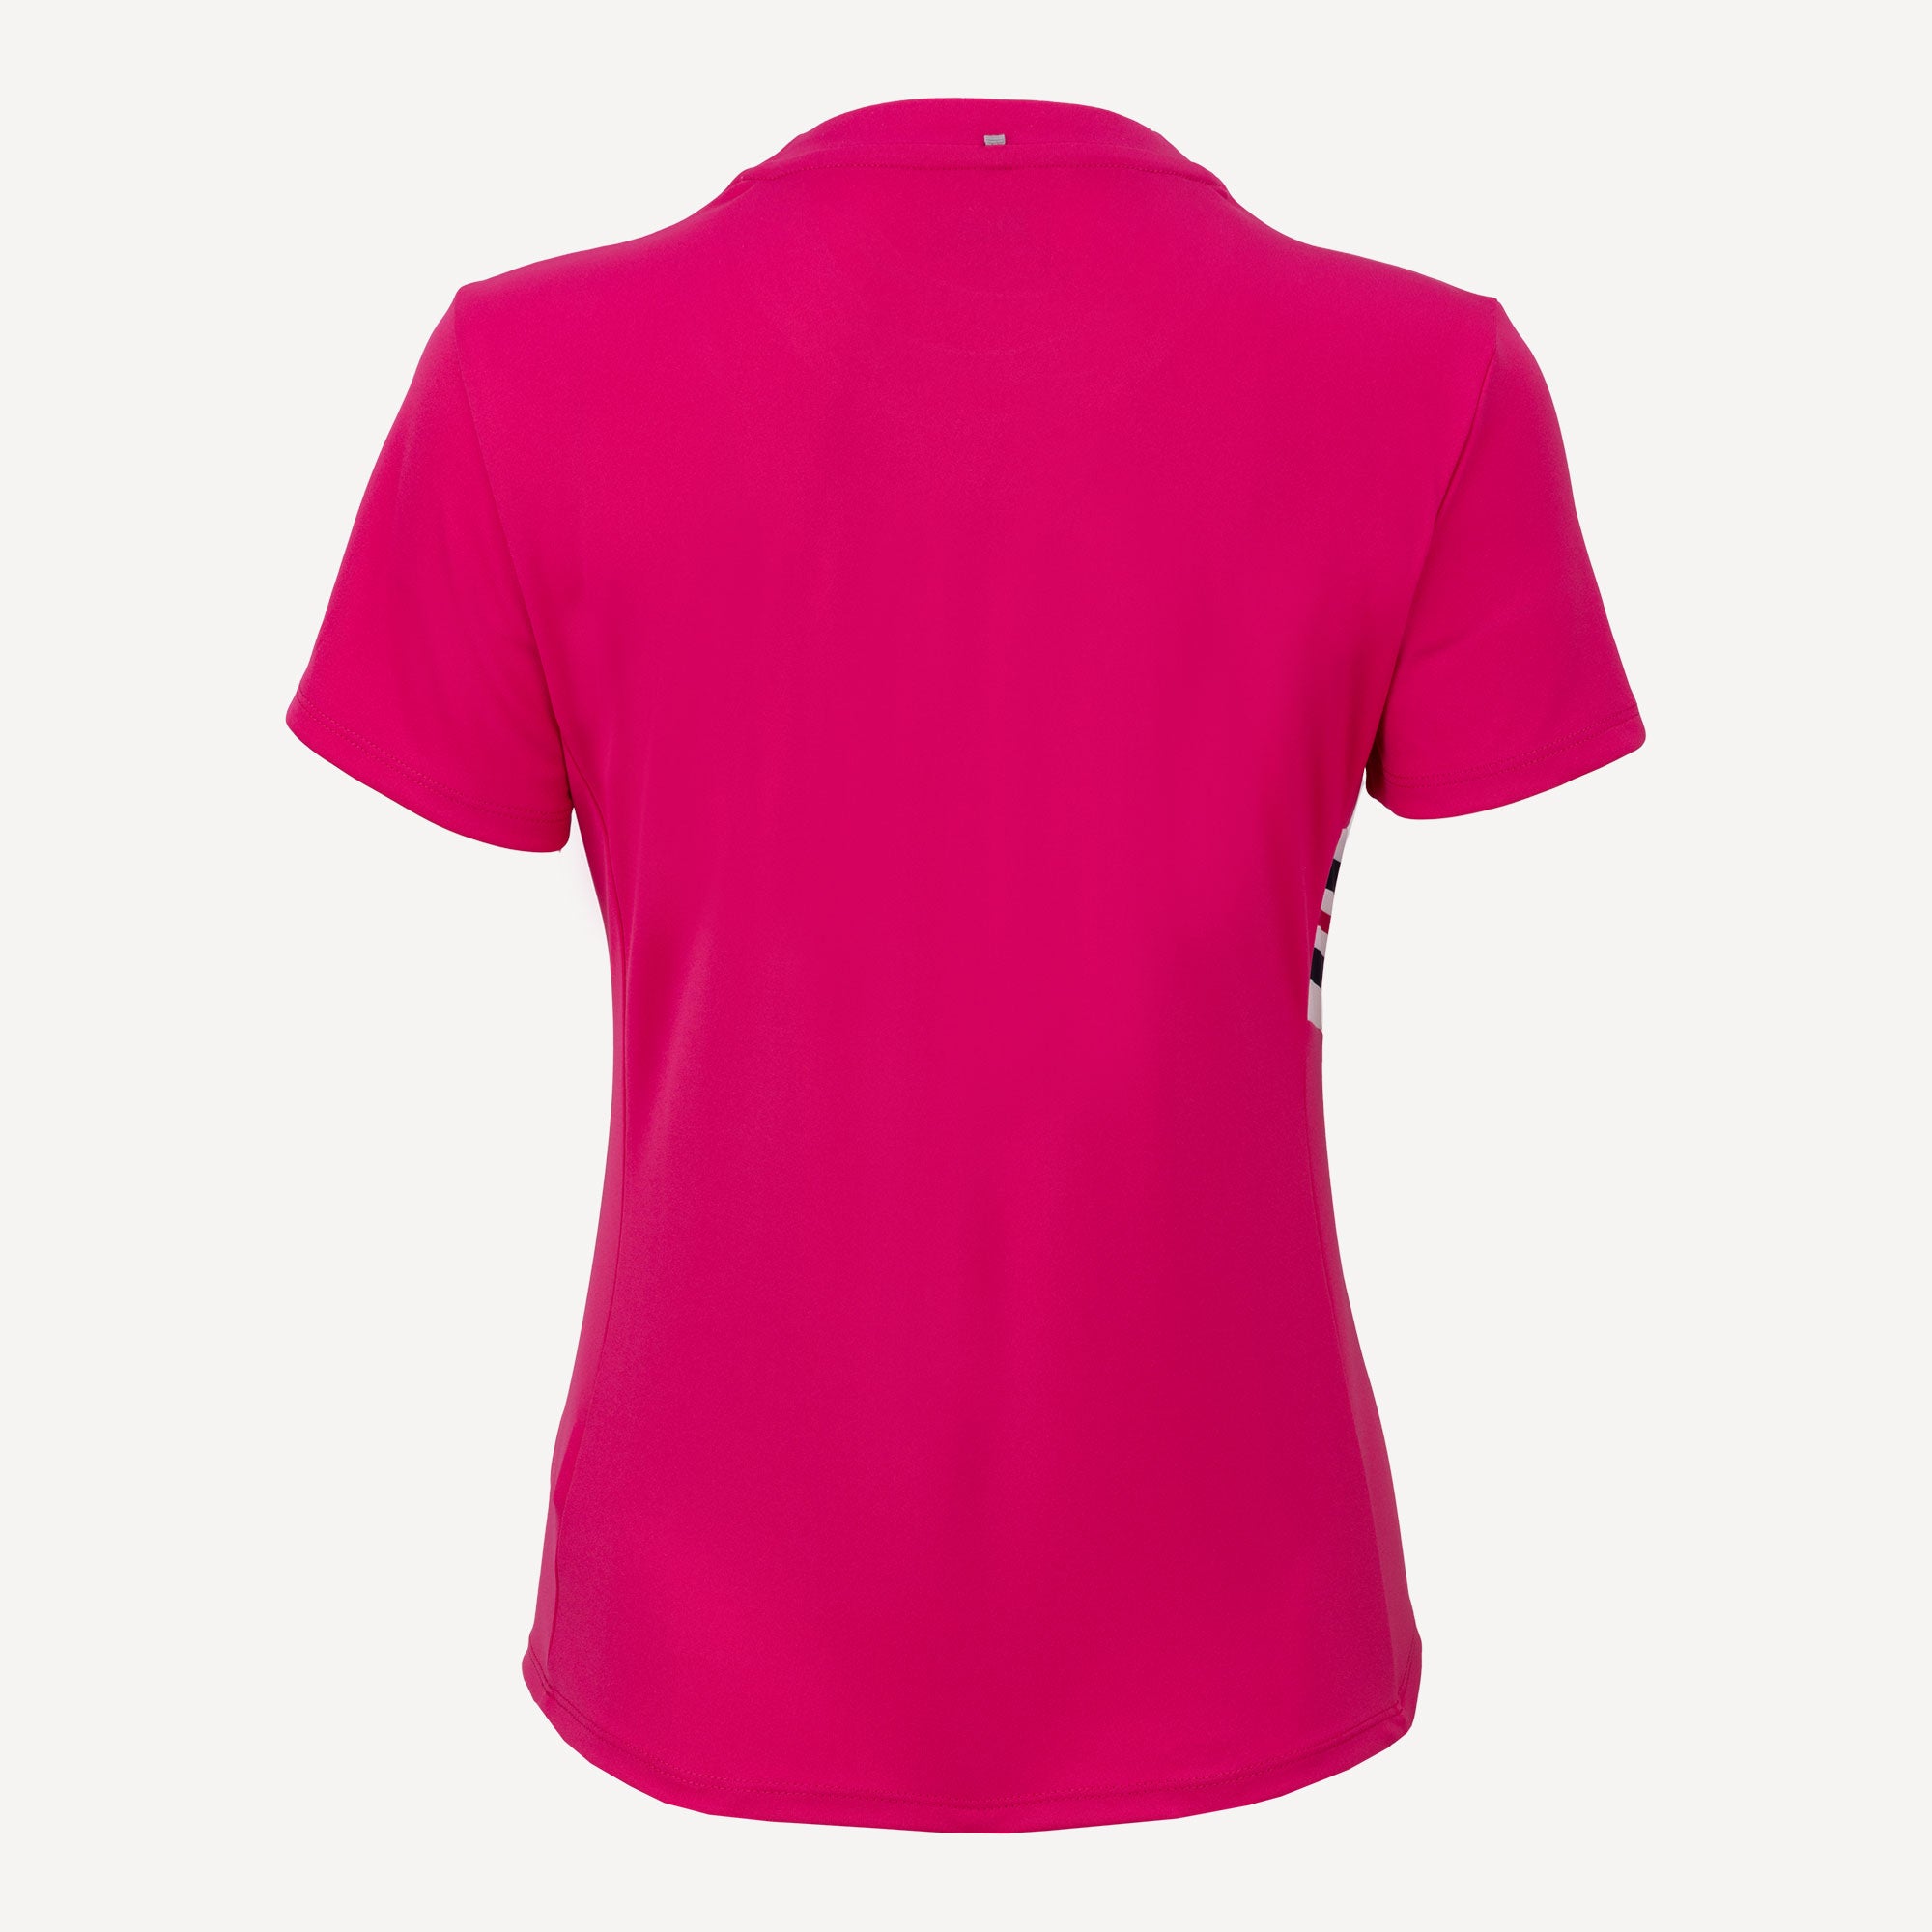 Fila Paula Women's Tennis Shirt Pink (2)